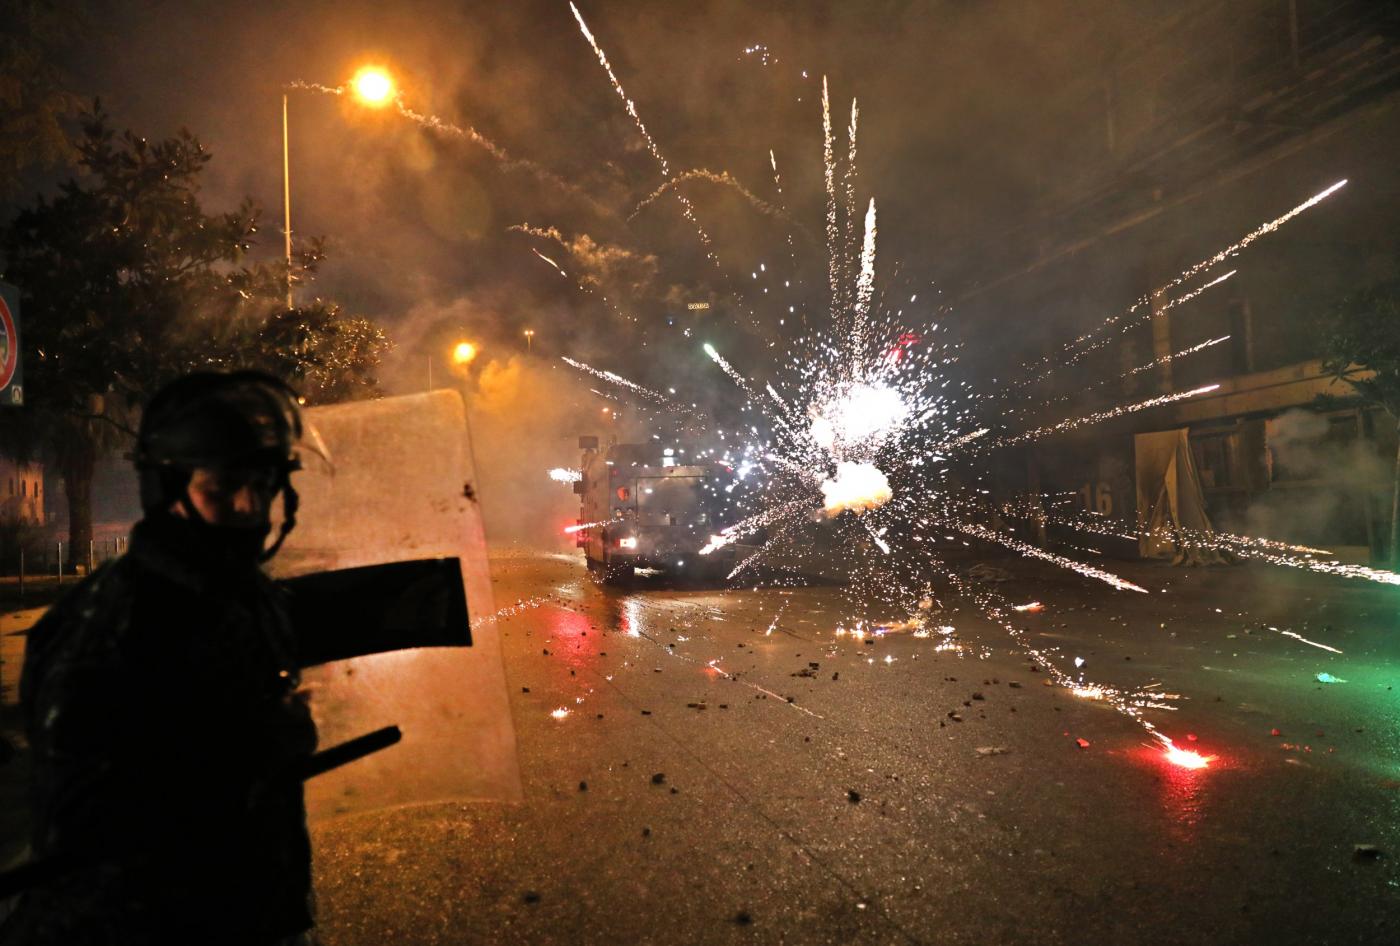 Des partisans du Hezbollah et d’Amal lancent des feux d’artifice sur les forces de sécurité dans le centre de Beyrouth, dans la nuit du 16 au 17 décembre (AFP)